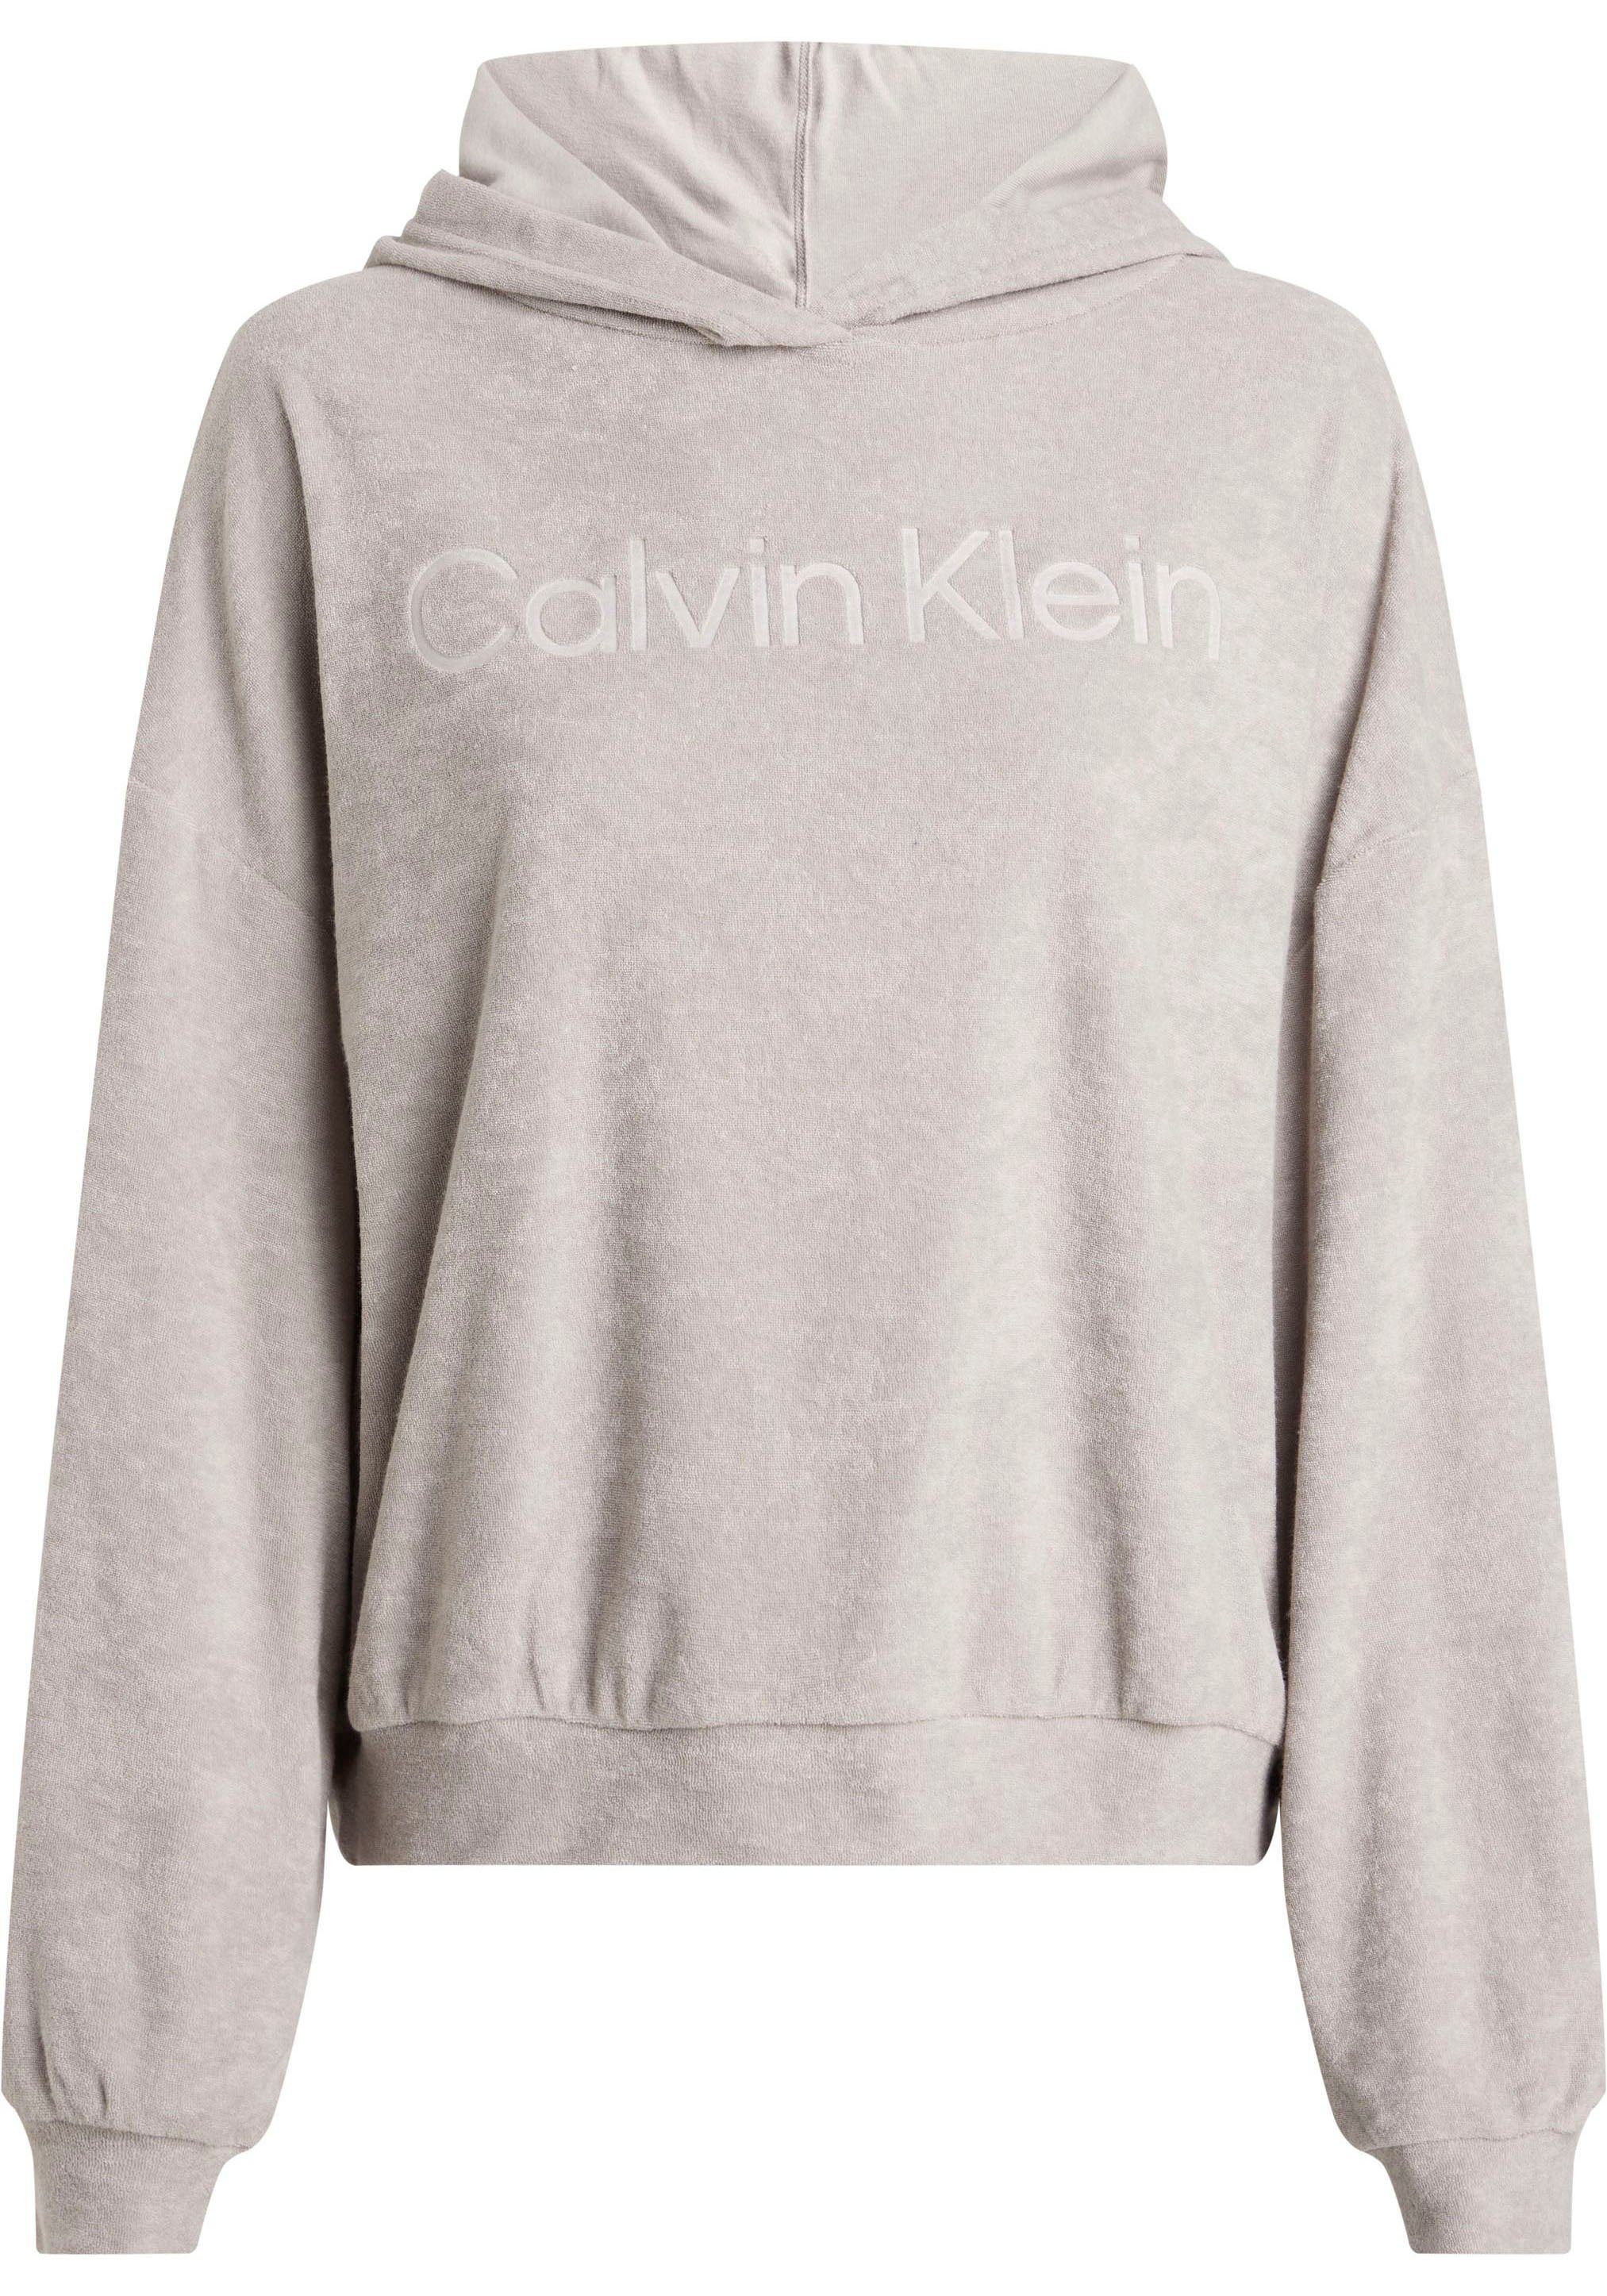 Logoprägung mit Klein Calvin HOODIE Underwear Kapuzensweatshirt